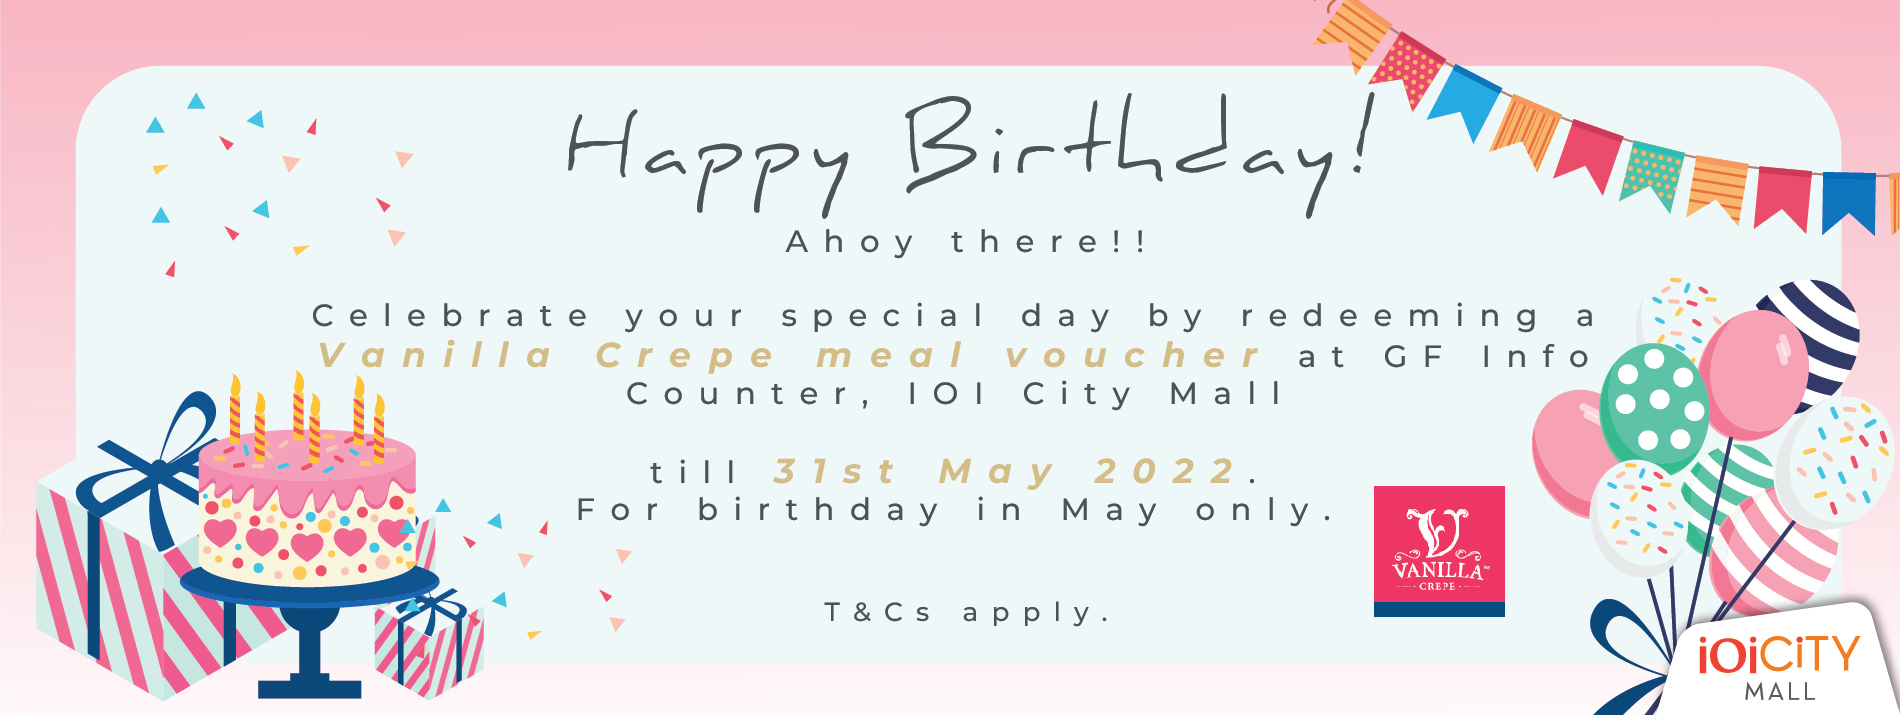 ICM-May Birthday​